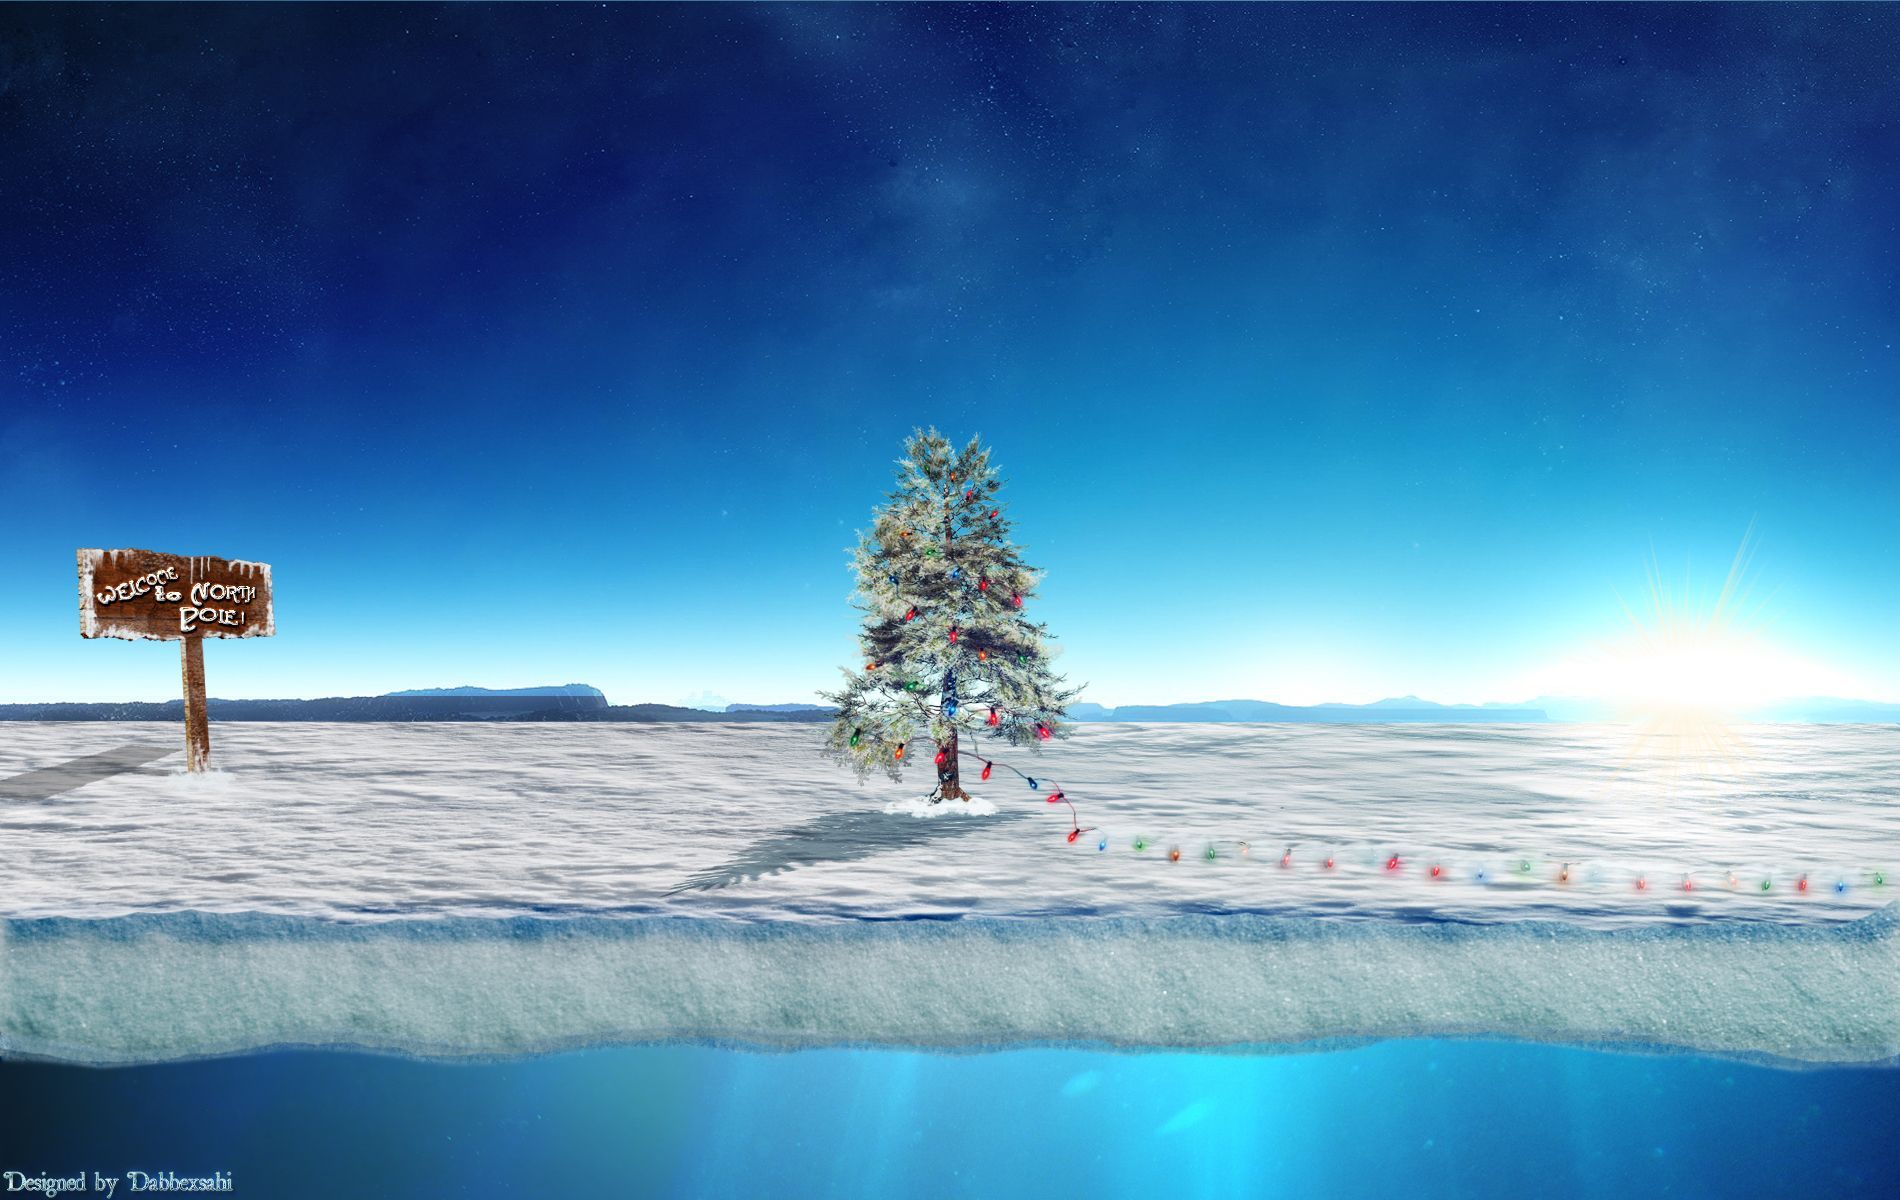 North pole xmas tree by dabbexsahi by dabbex30 on DeviantArt